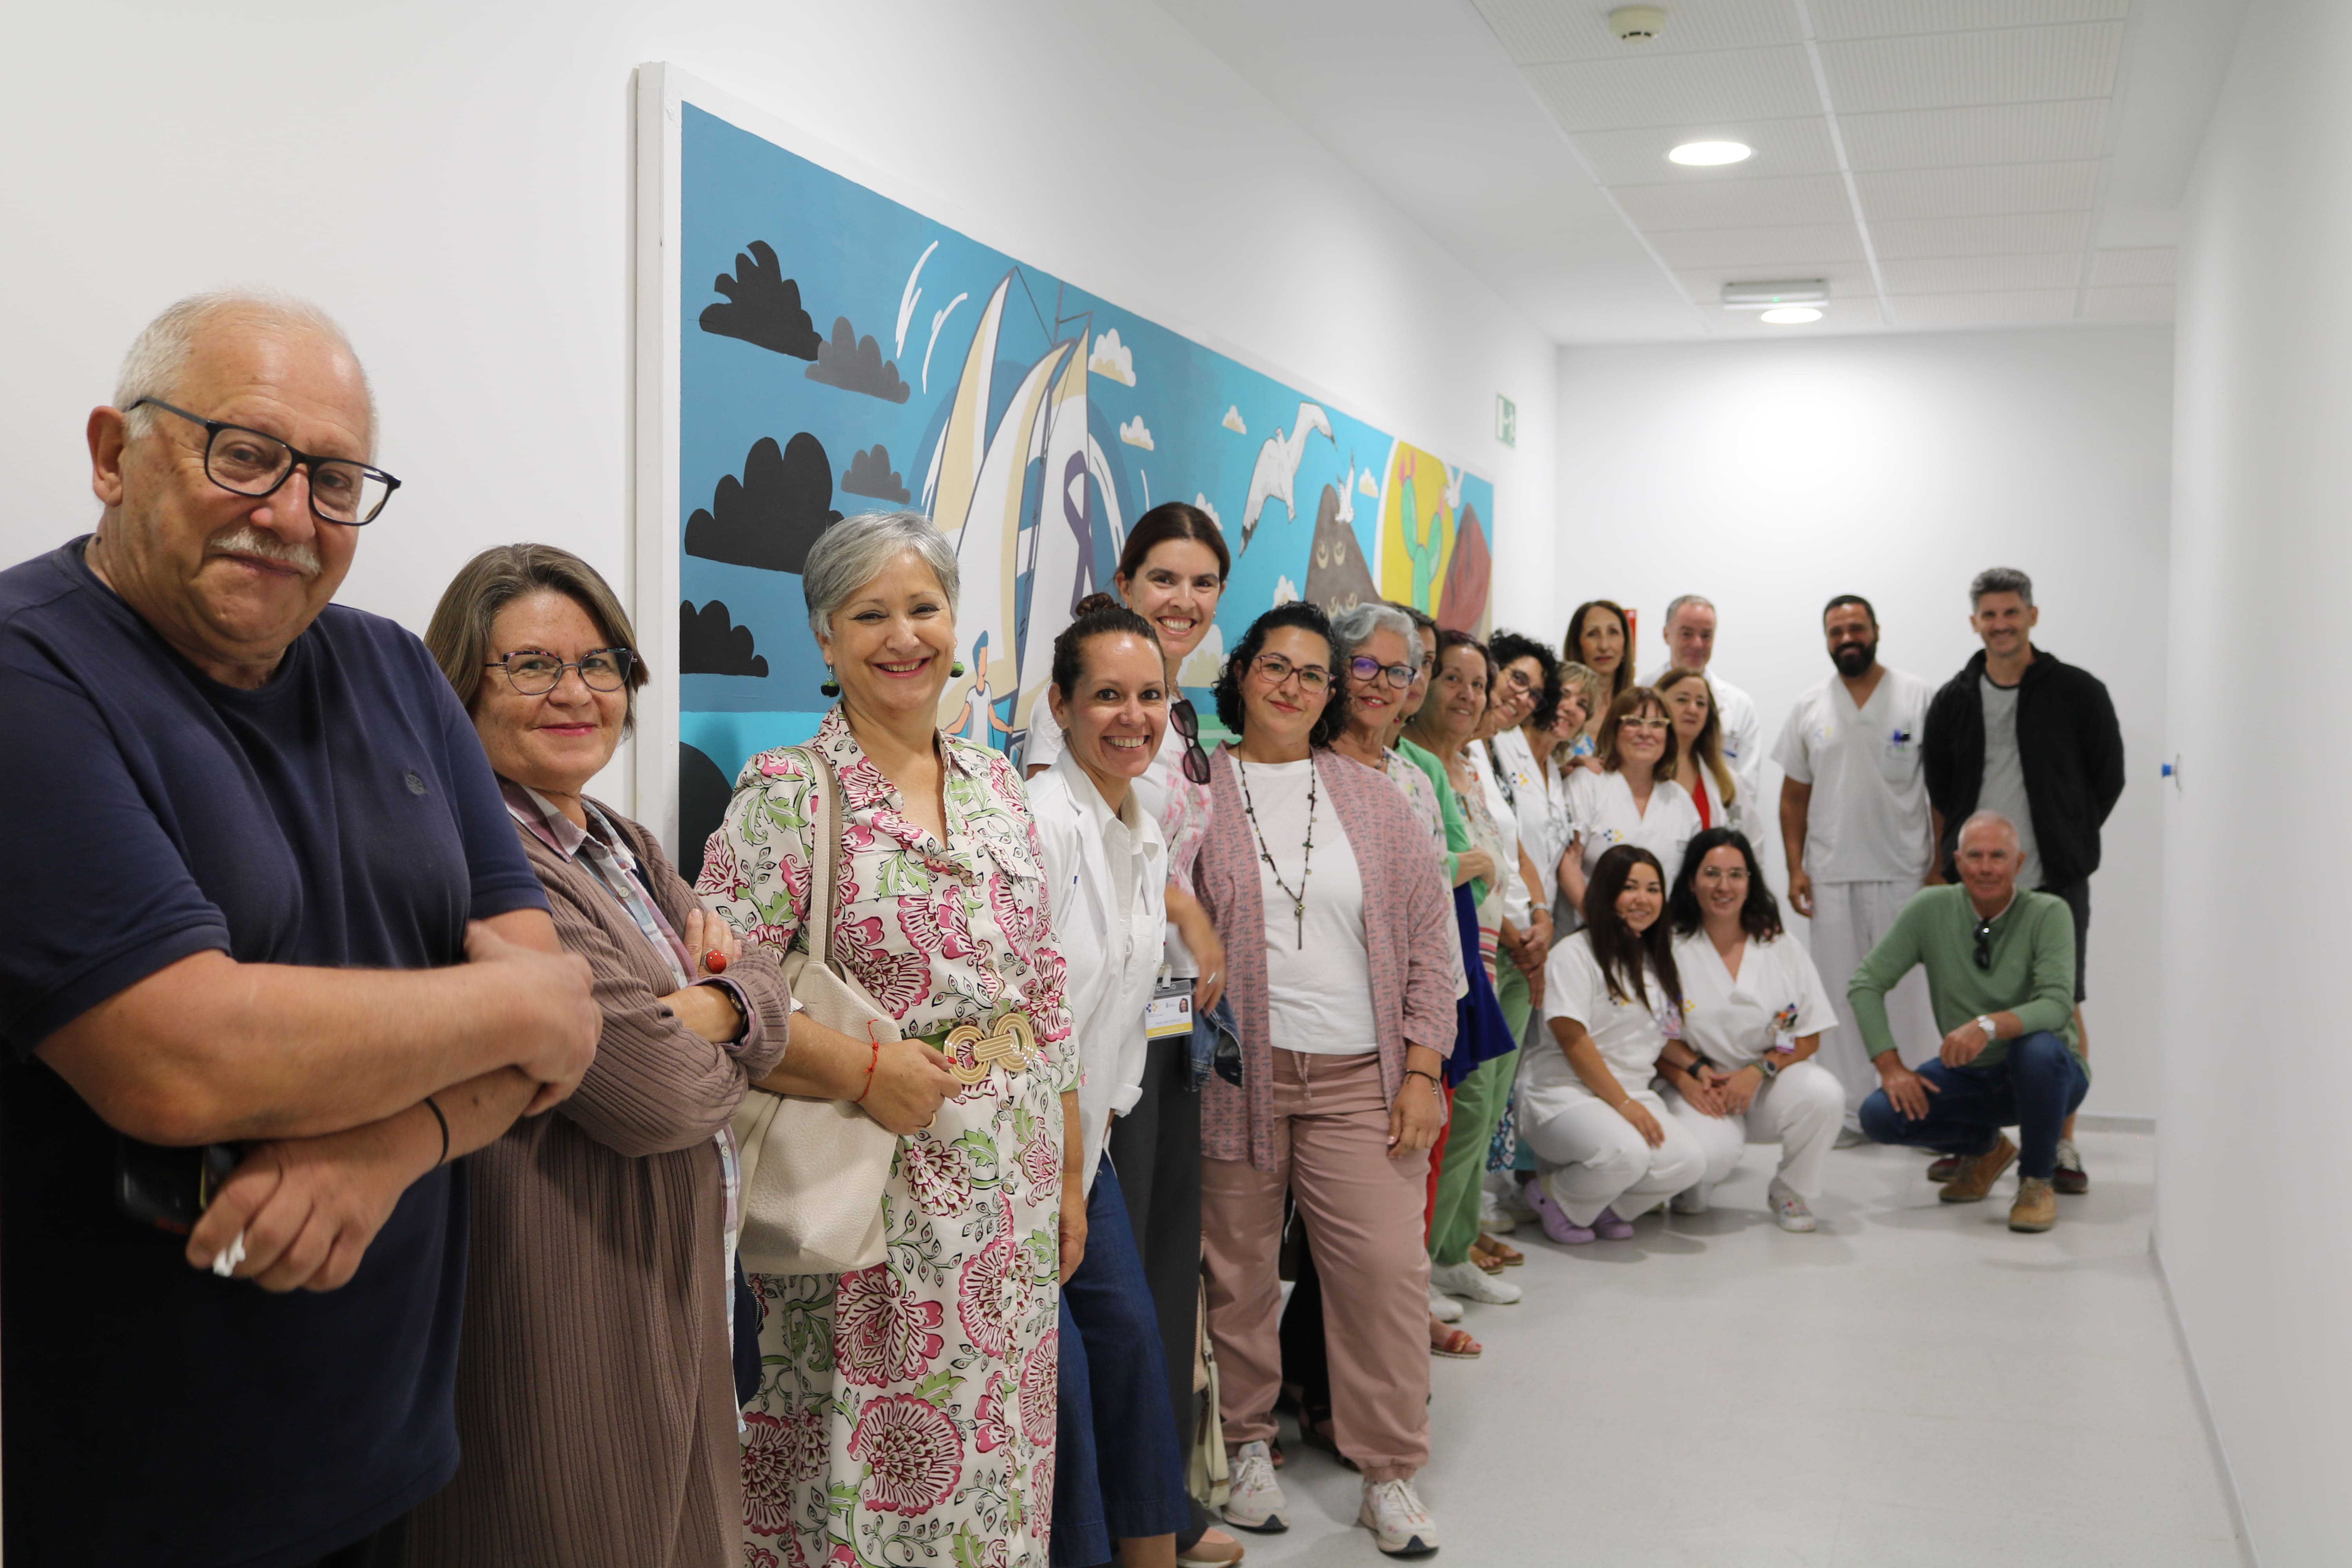 El hospital Molina Orosa presenta la obra ‘Paz en medio de la tormenta’